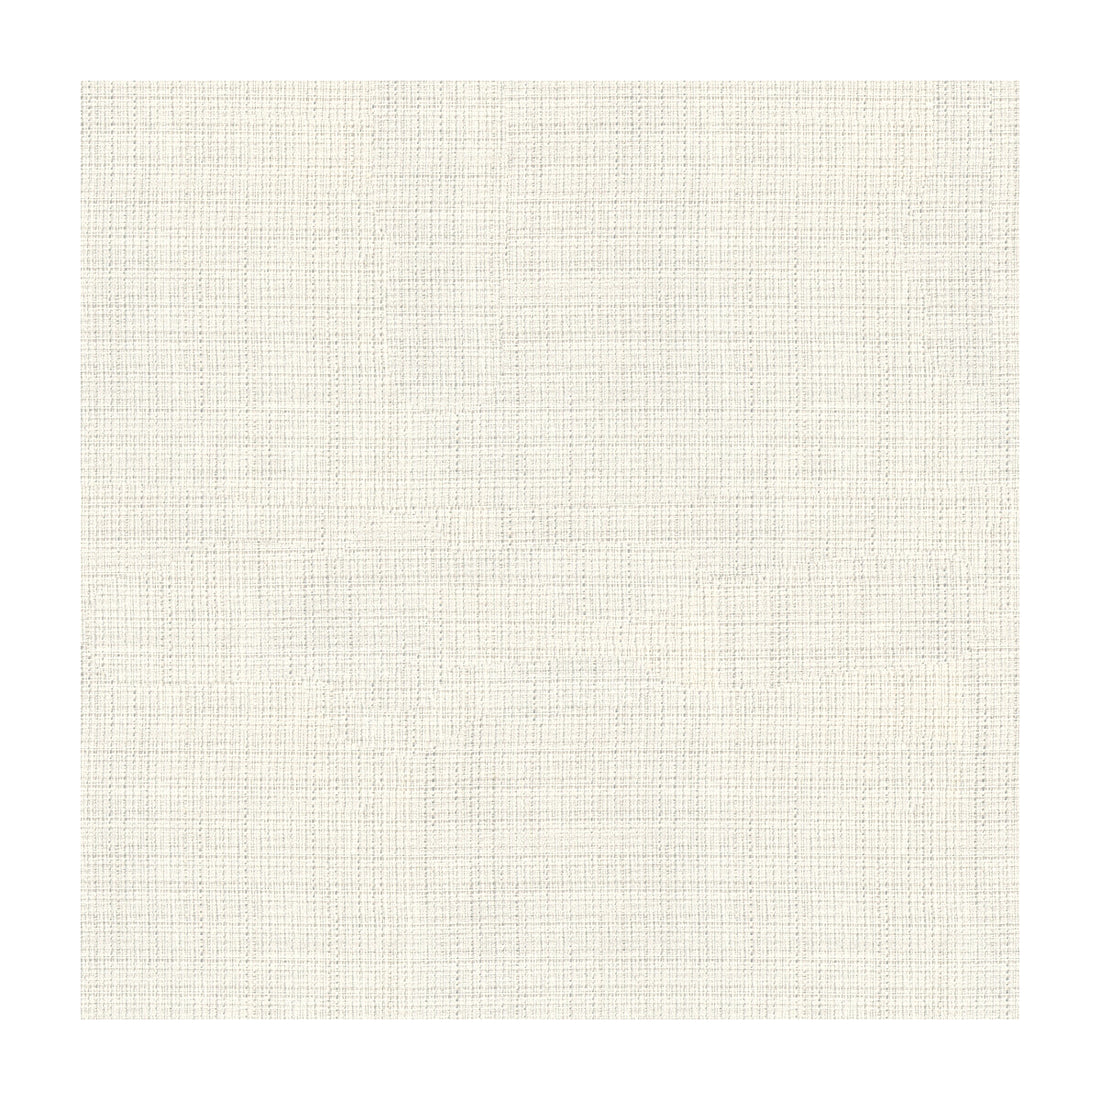 Kravet Basics fabric in 4106-101 color - pattern 4106.101.0 - by Kravet Basics